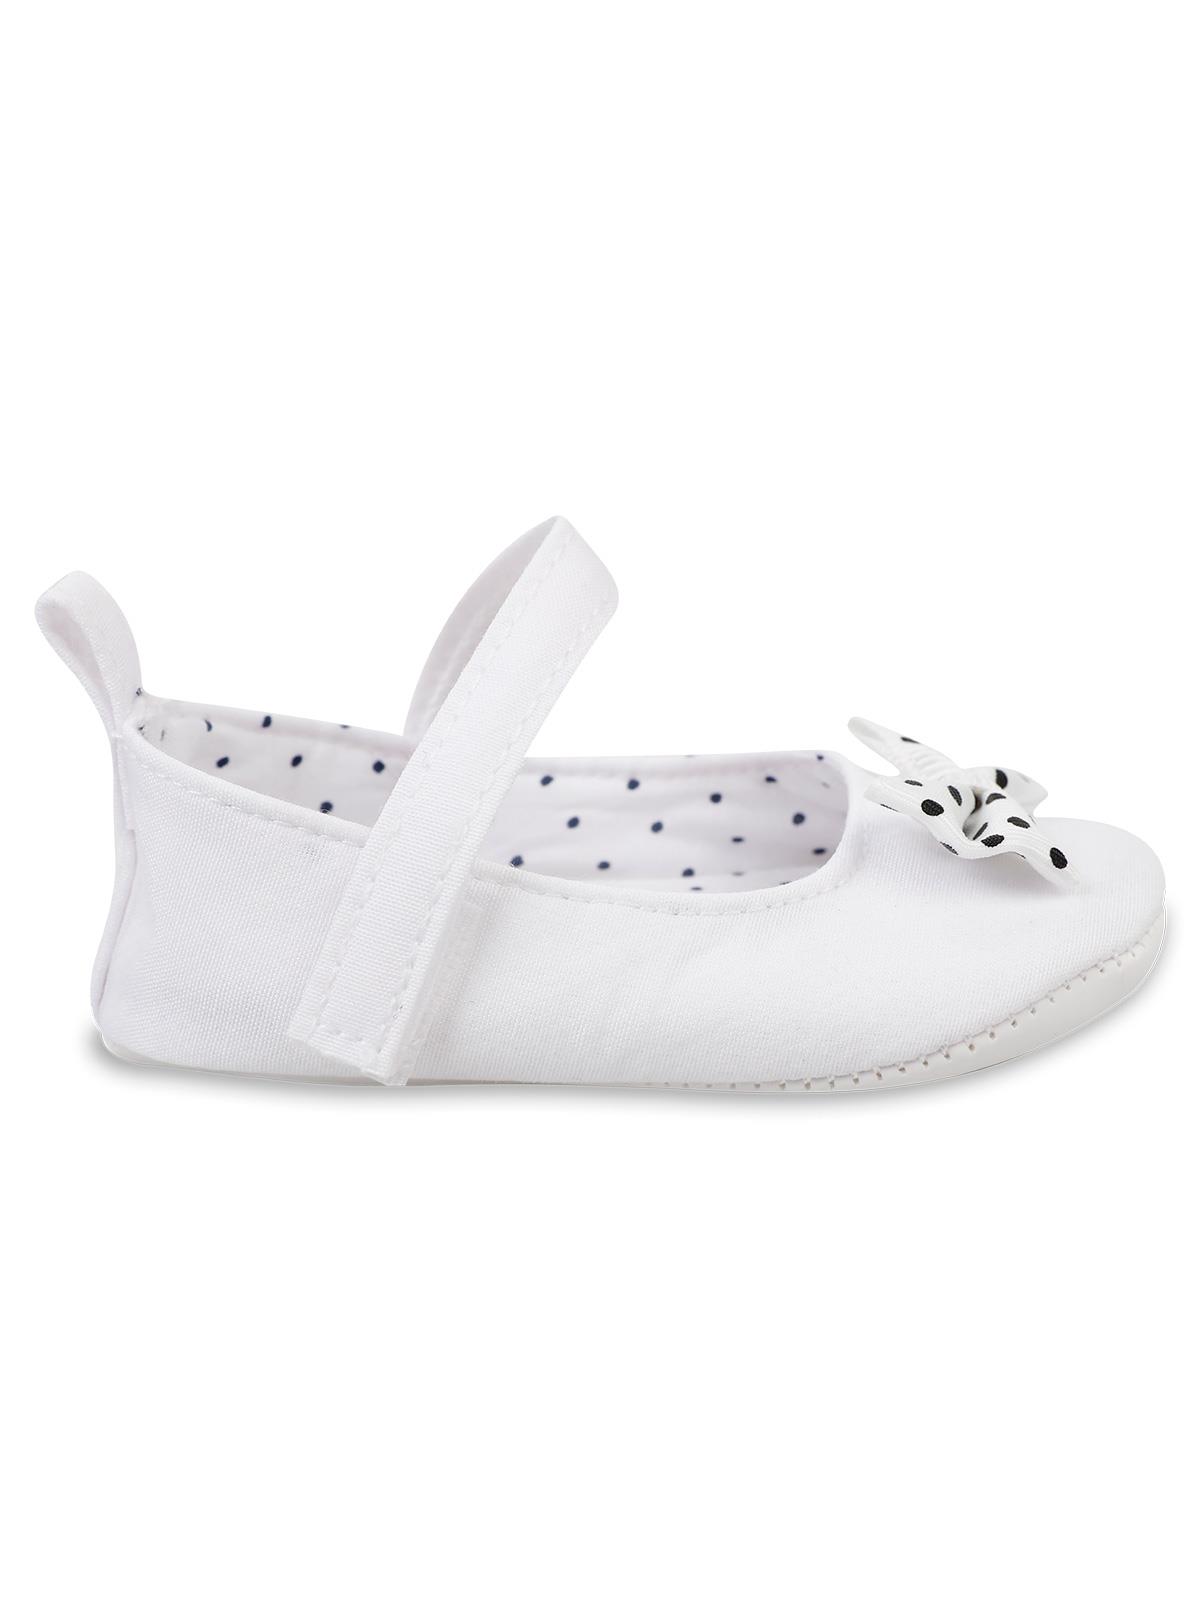 Civil Baby Kız Bebek Patik Ayakkabı 17-19 Numara Beyaz